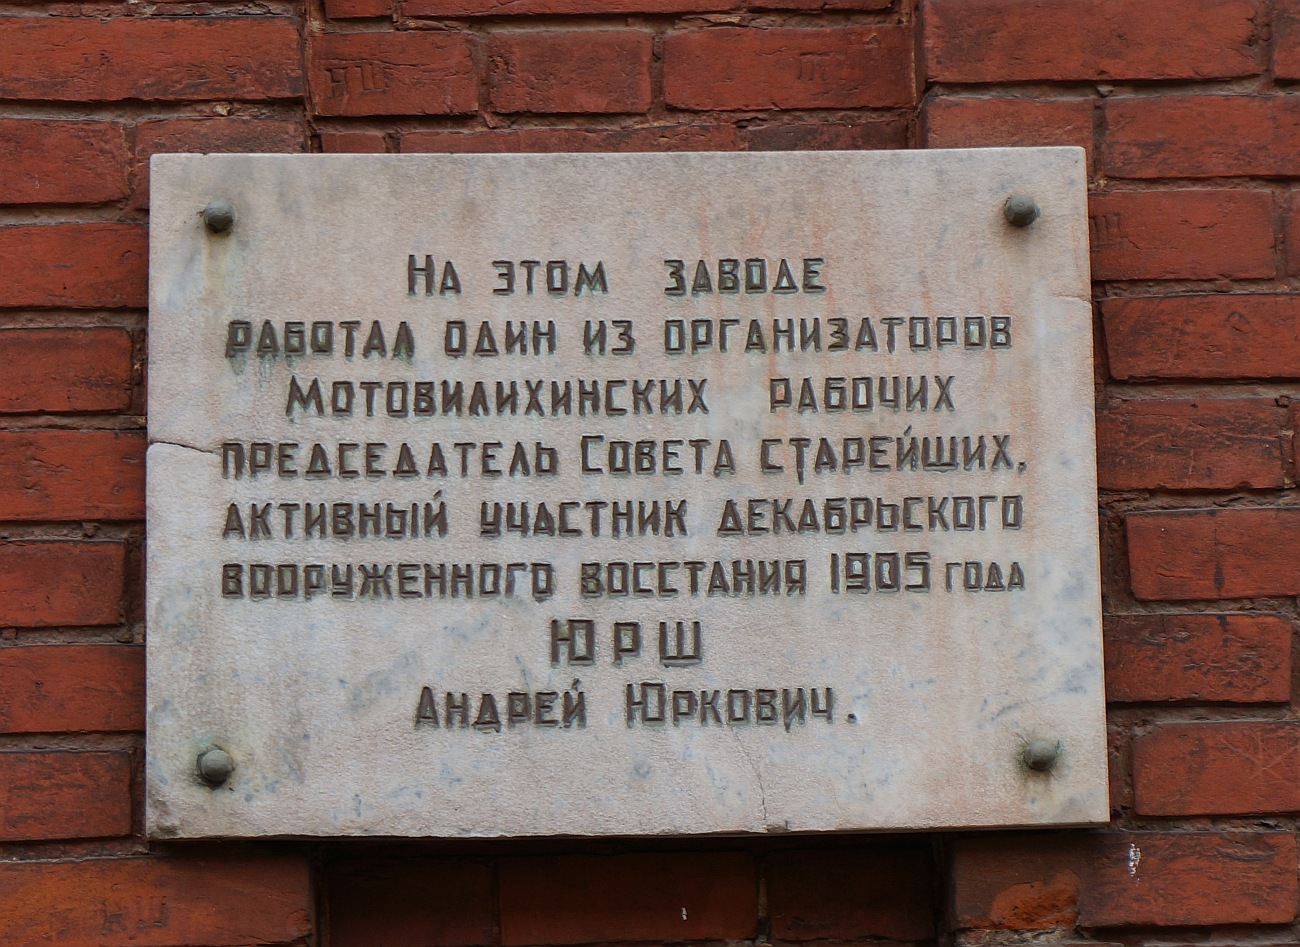 Perm, Улица 1905 года, 35. Perm — Memorial plaques